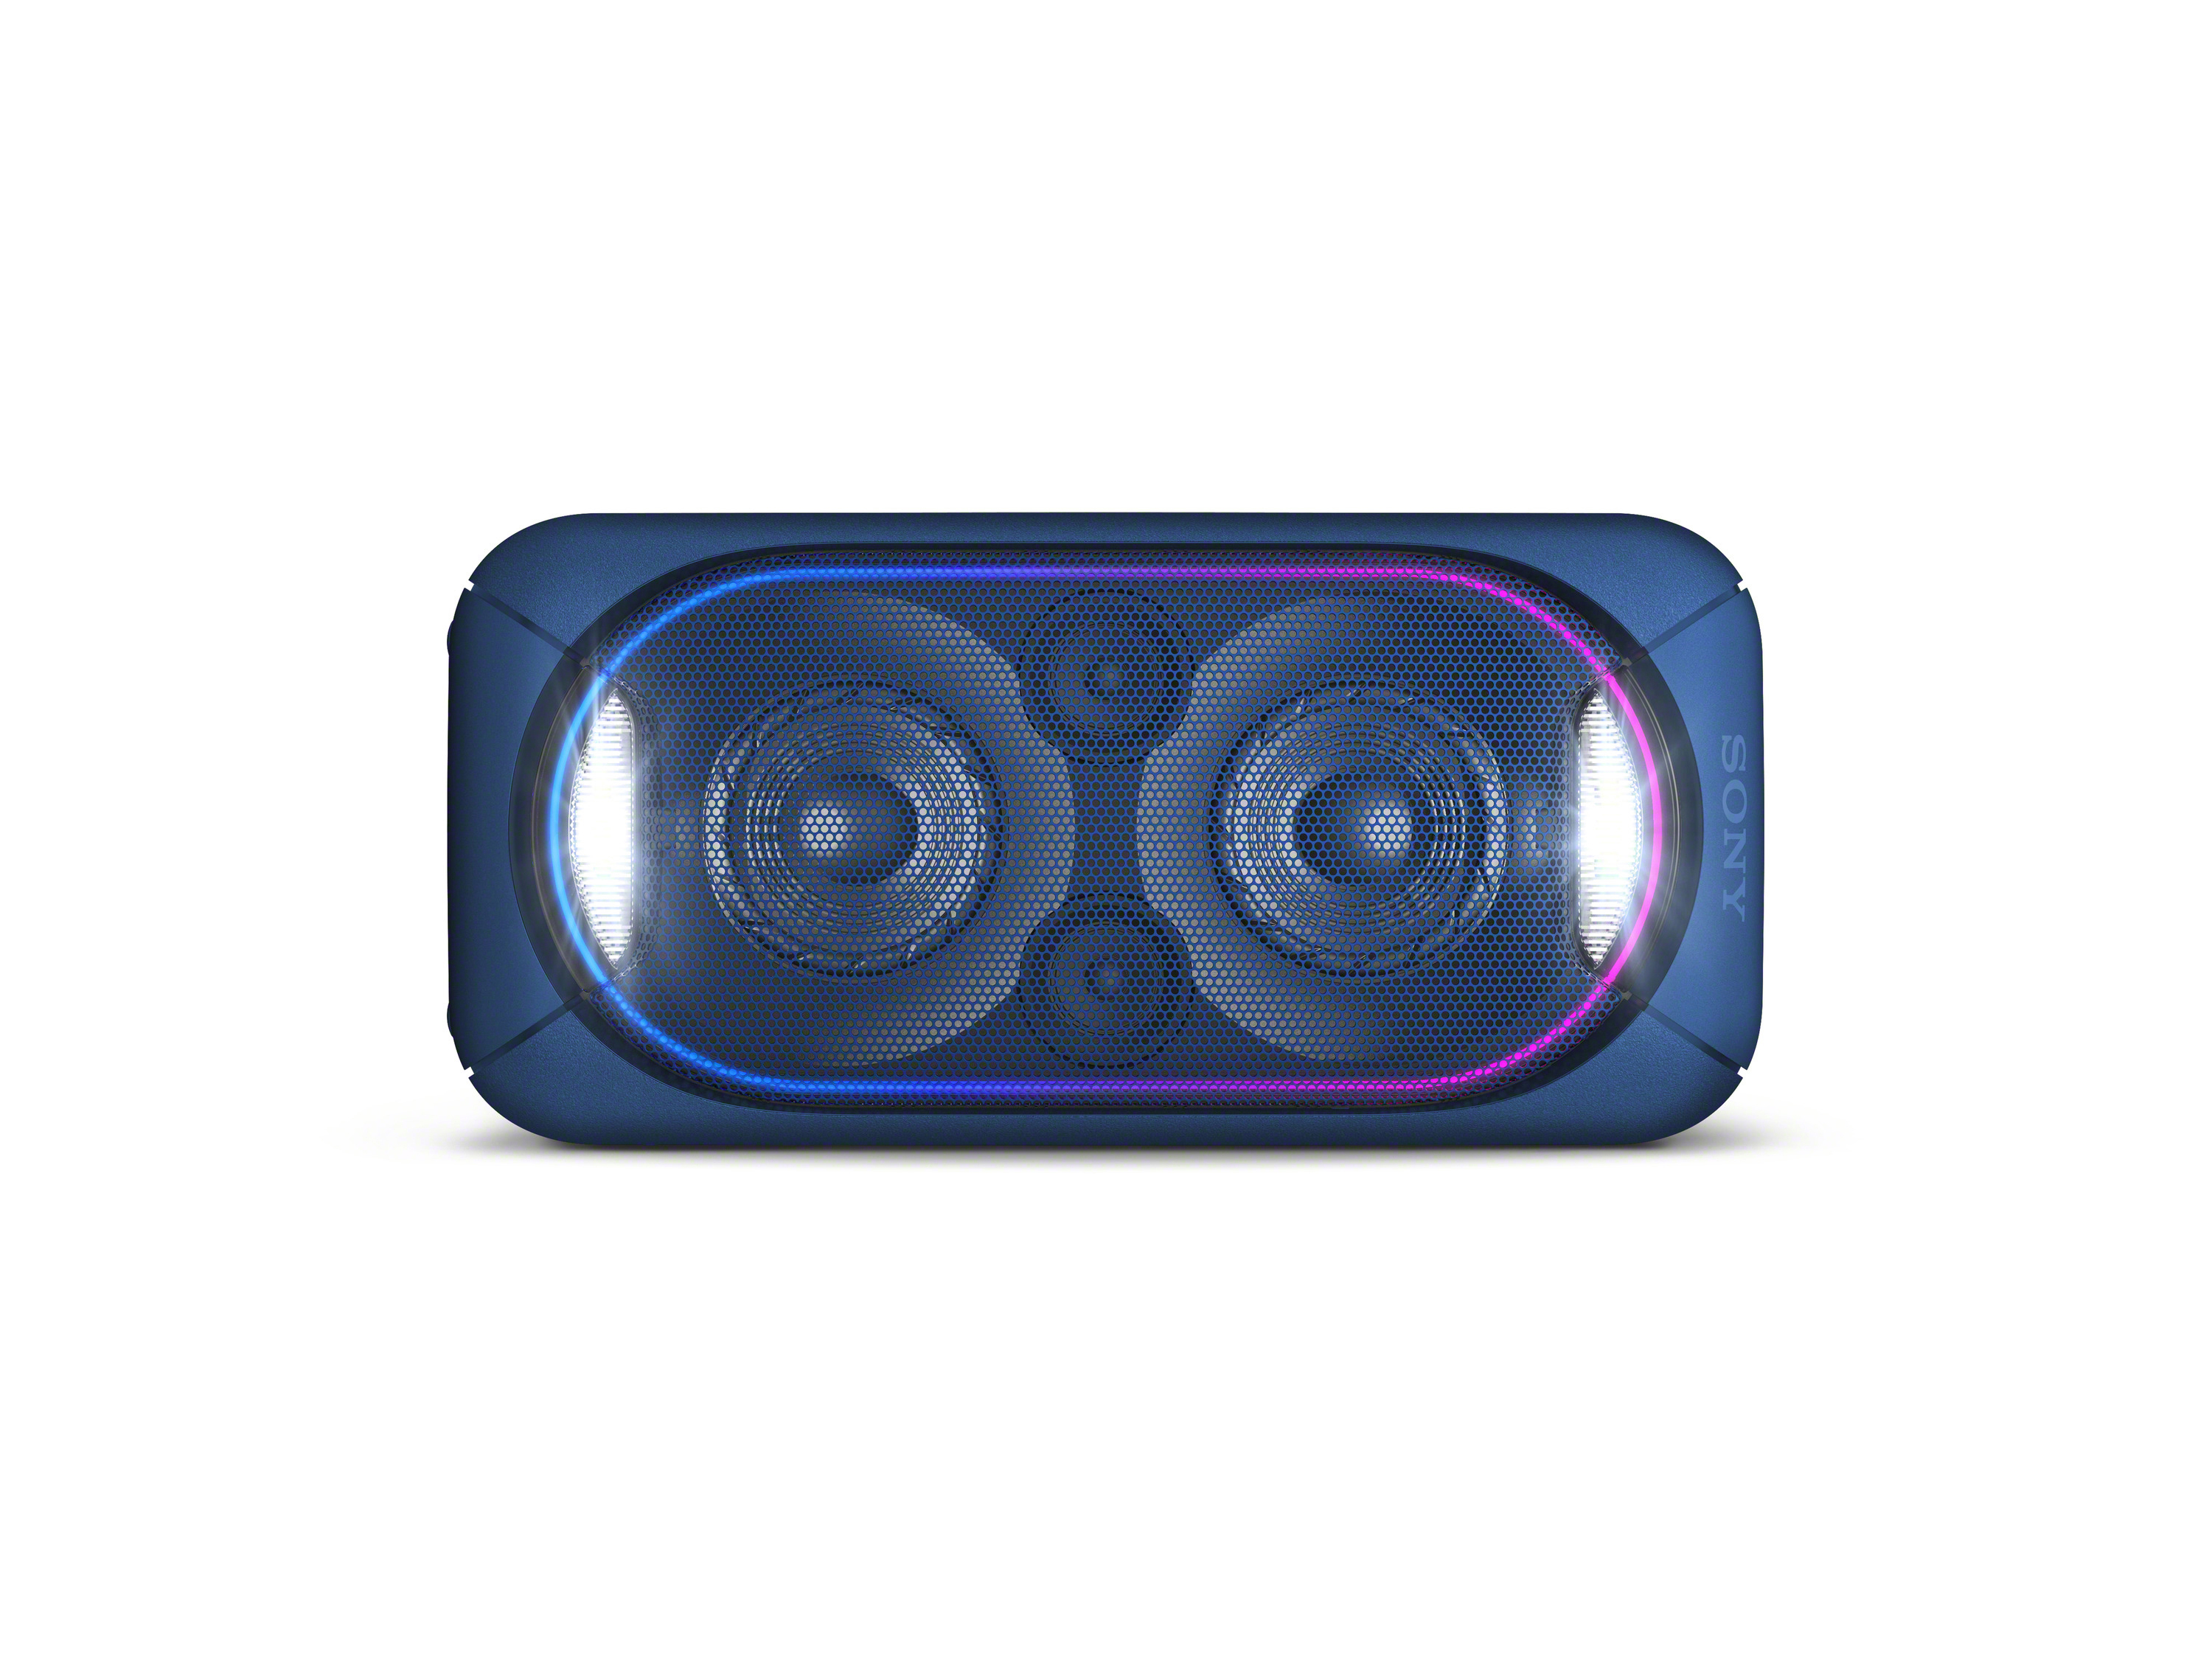 SONY GTK-XB60 Wireless Party Chain Blau Bluetooth Lautsprecher